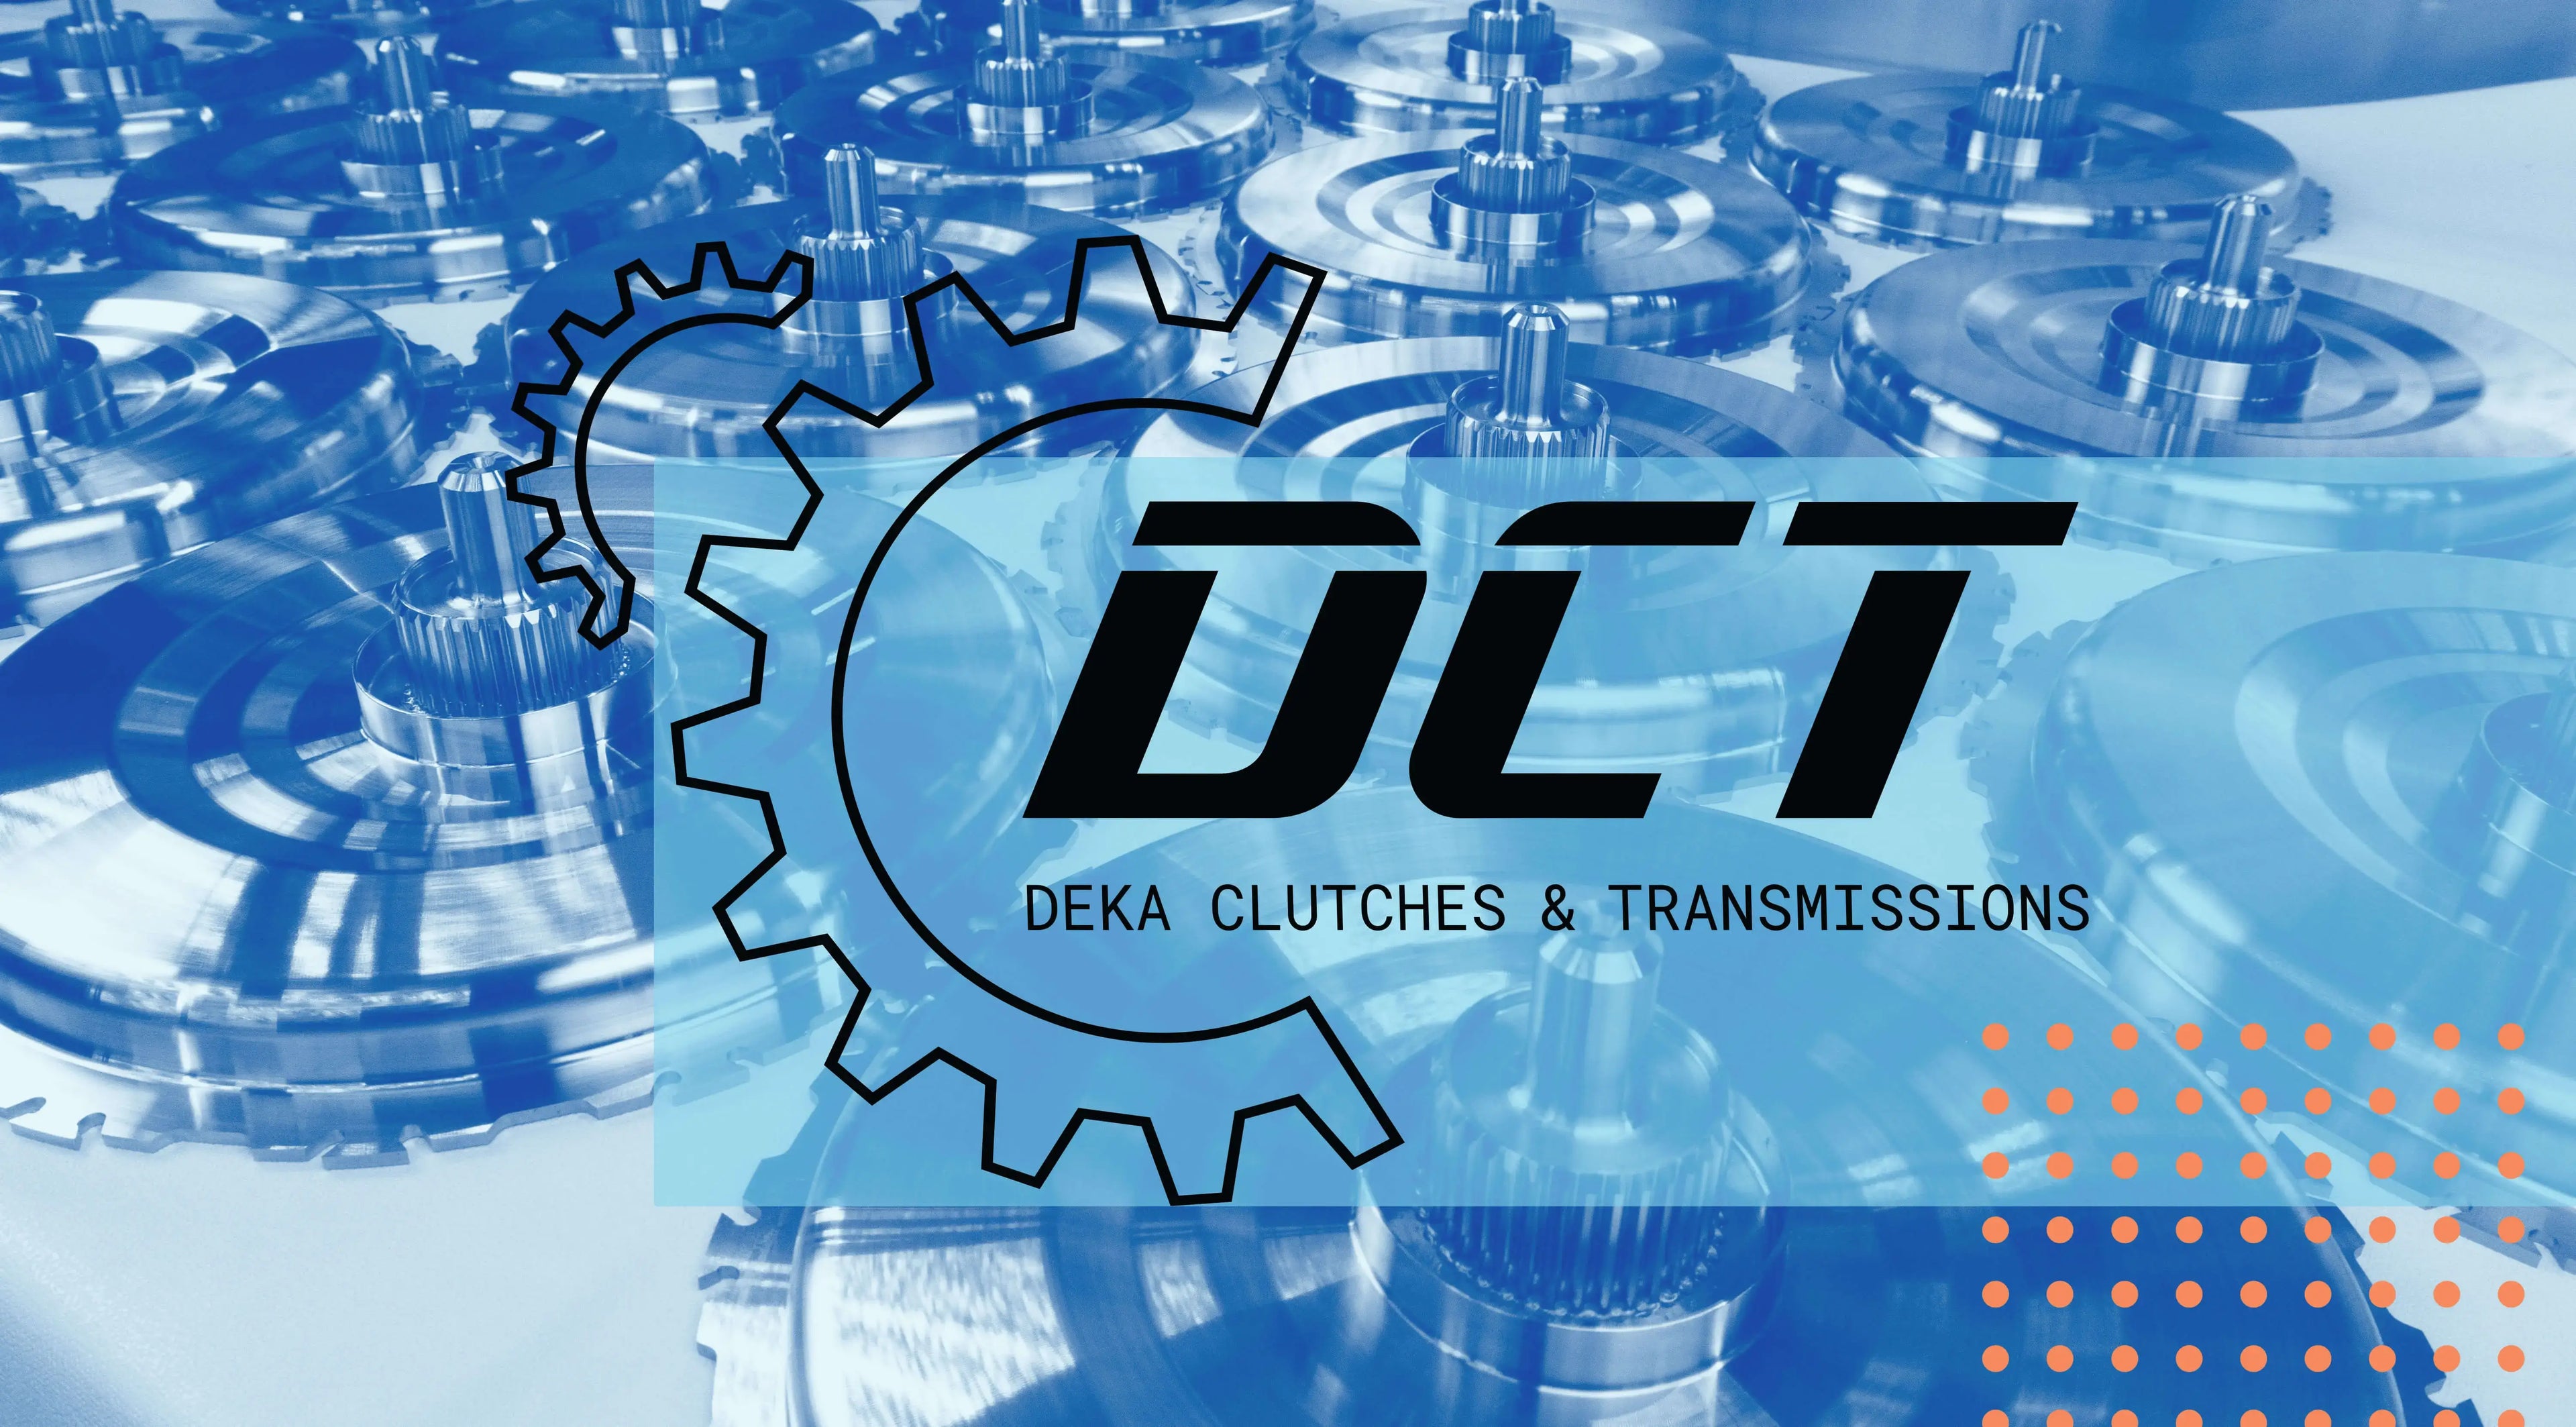 DEKA Clutches & Transmissions – DEKA Clutches & Transmissions